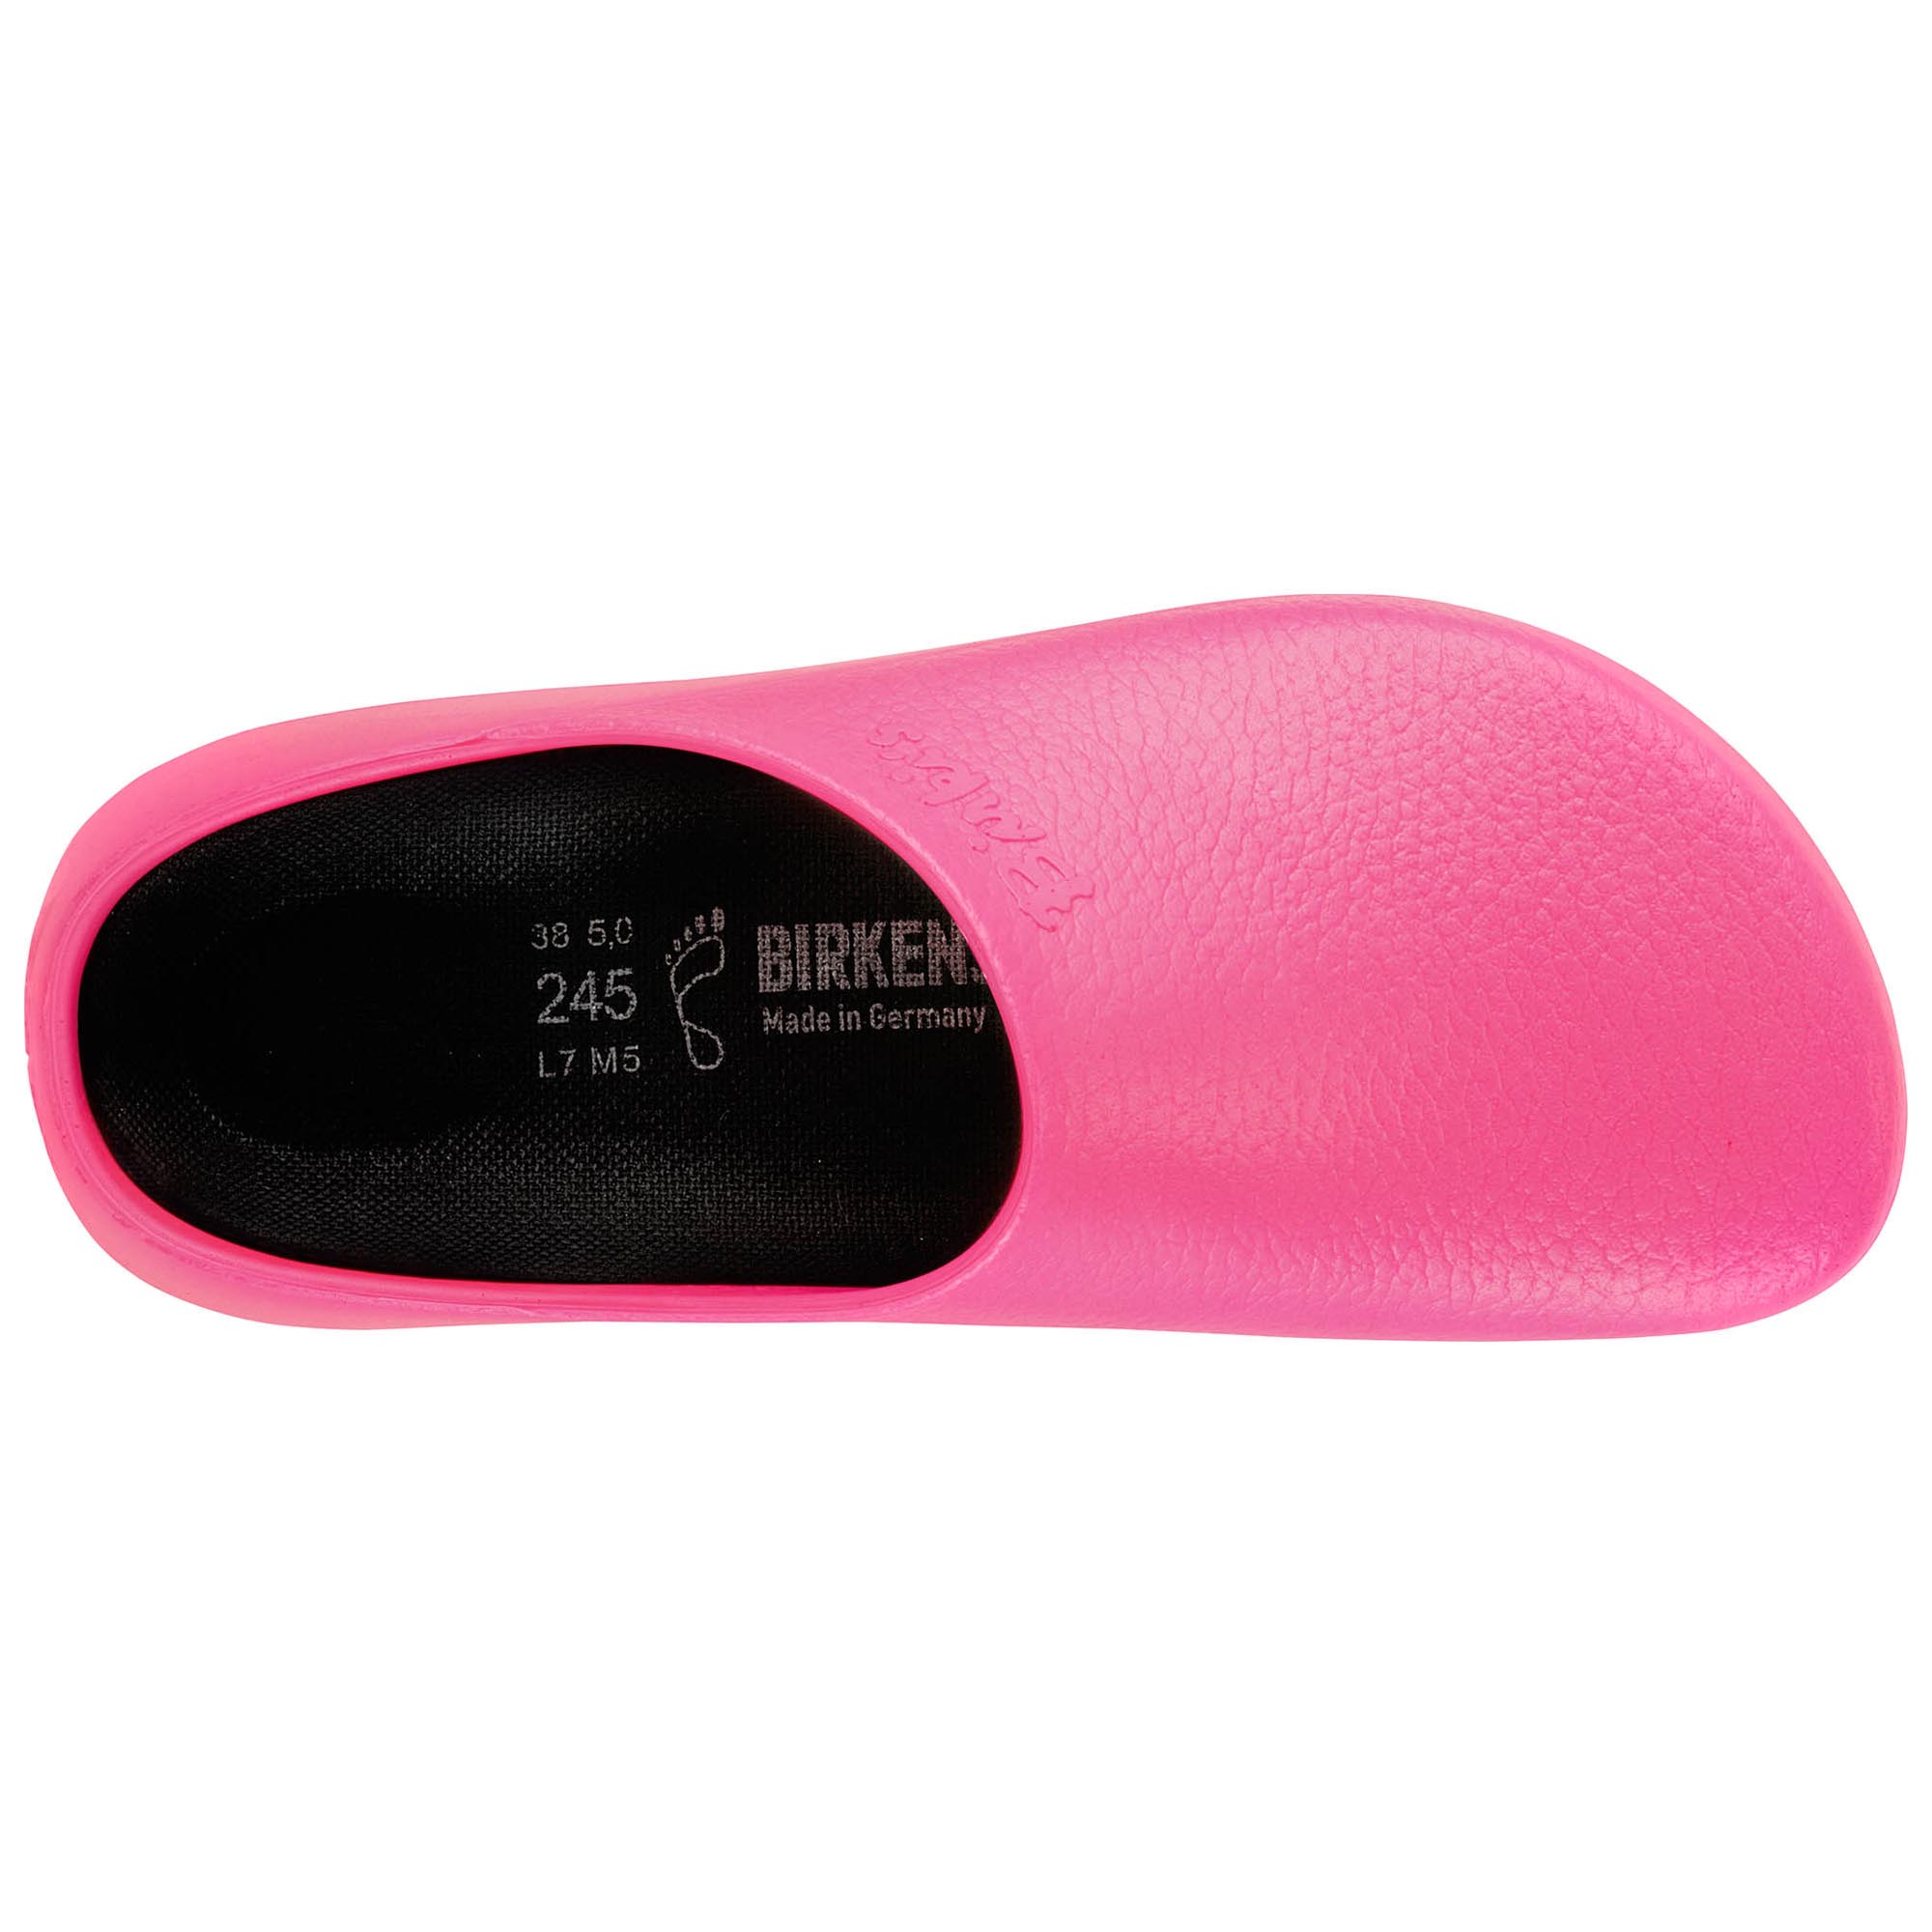 birkenstock clogs pink